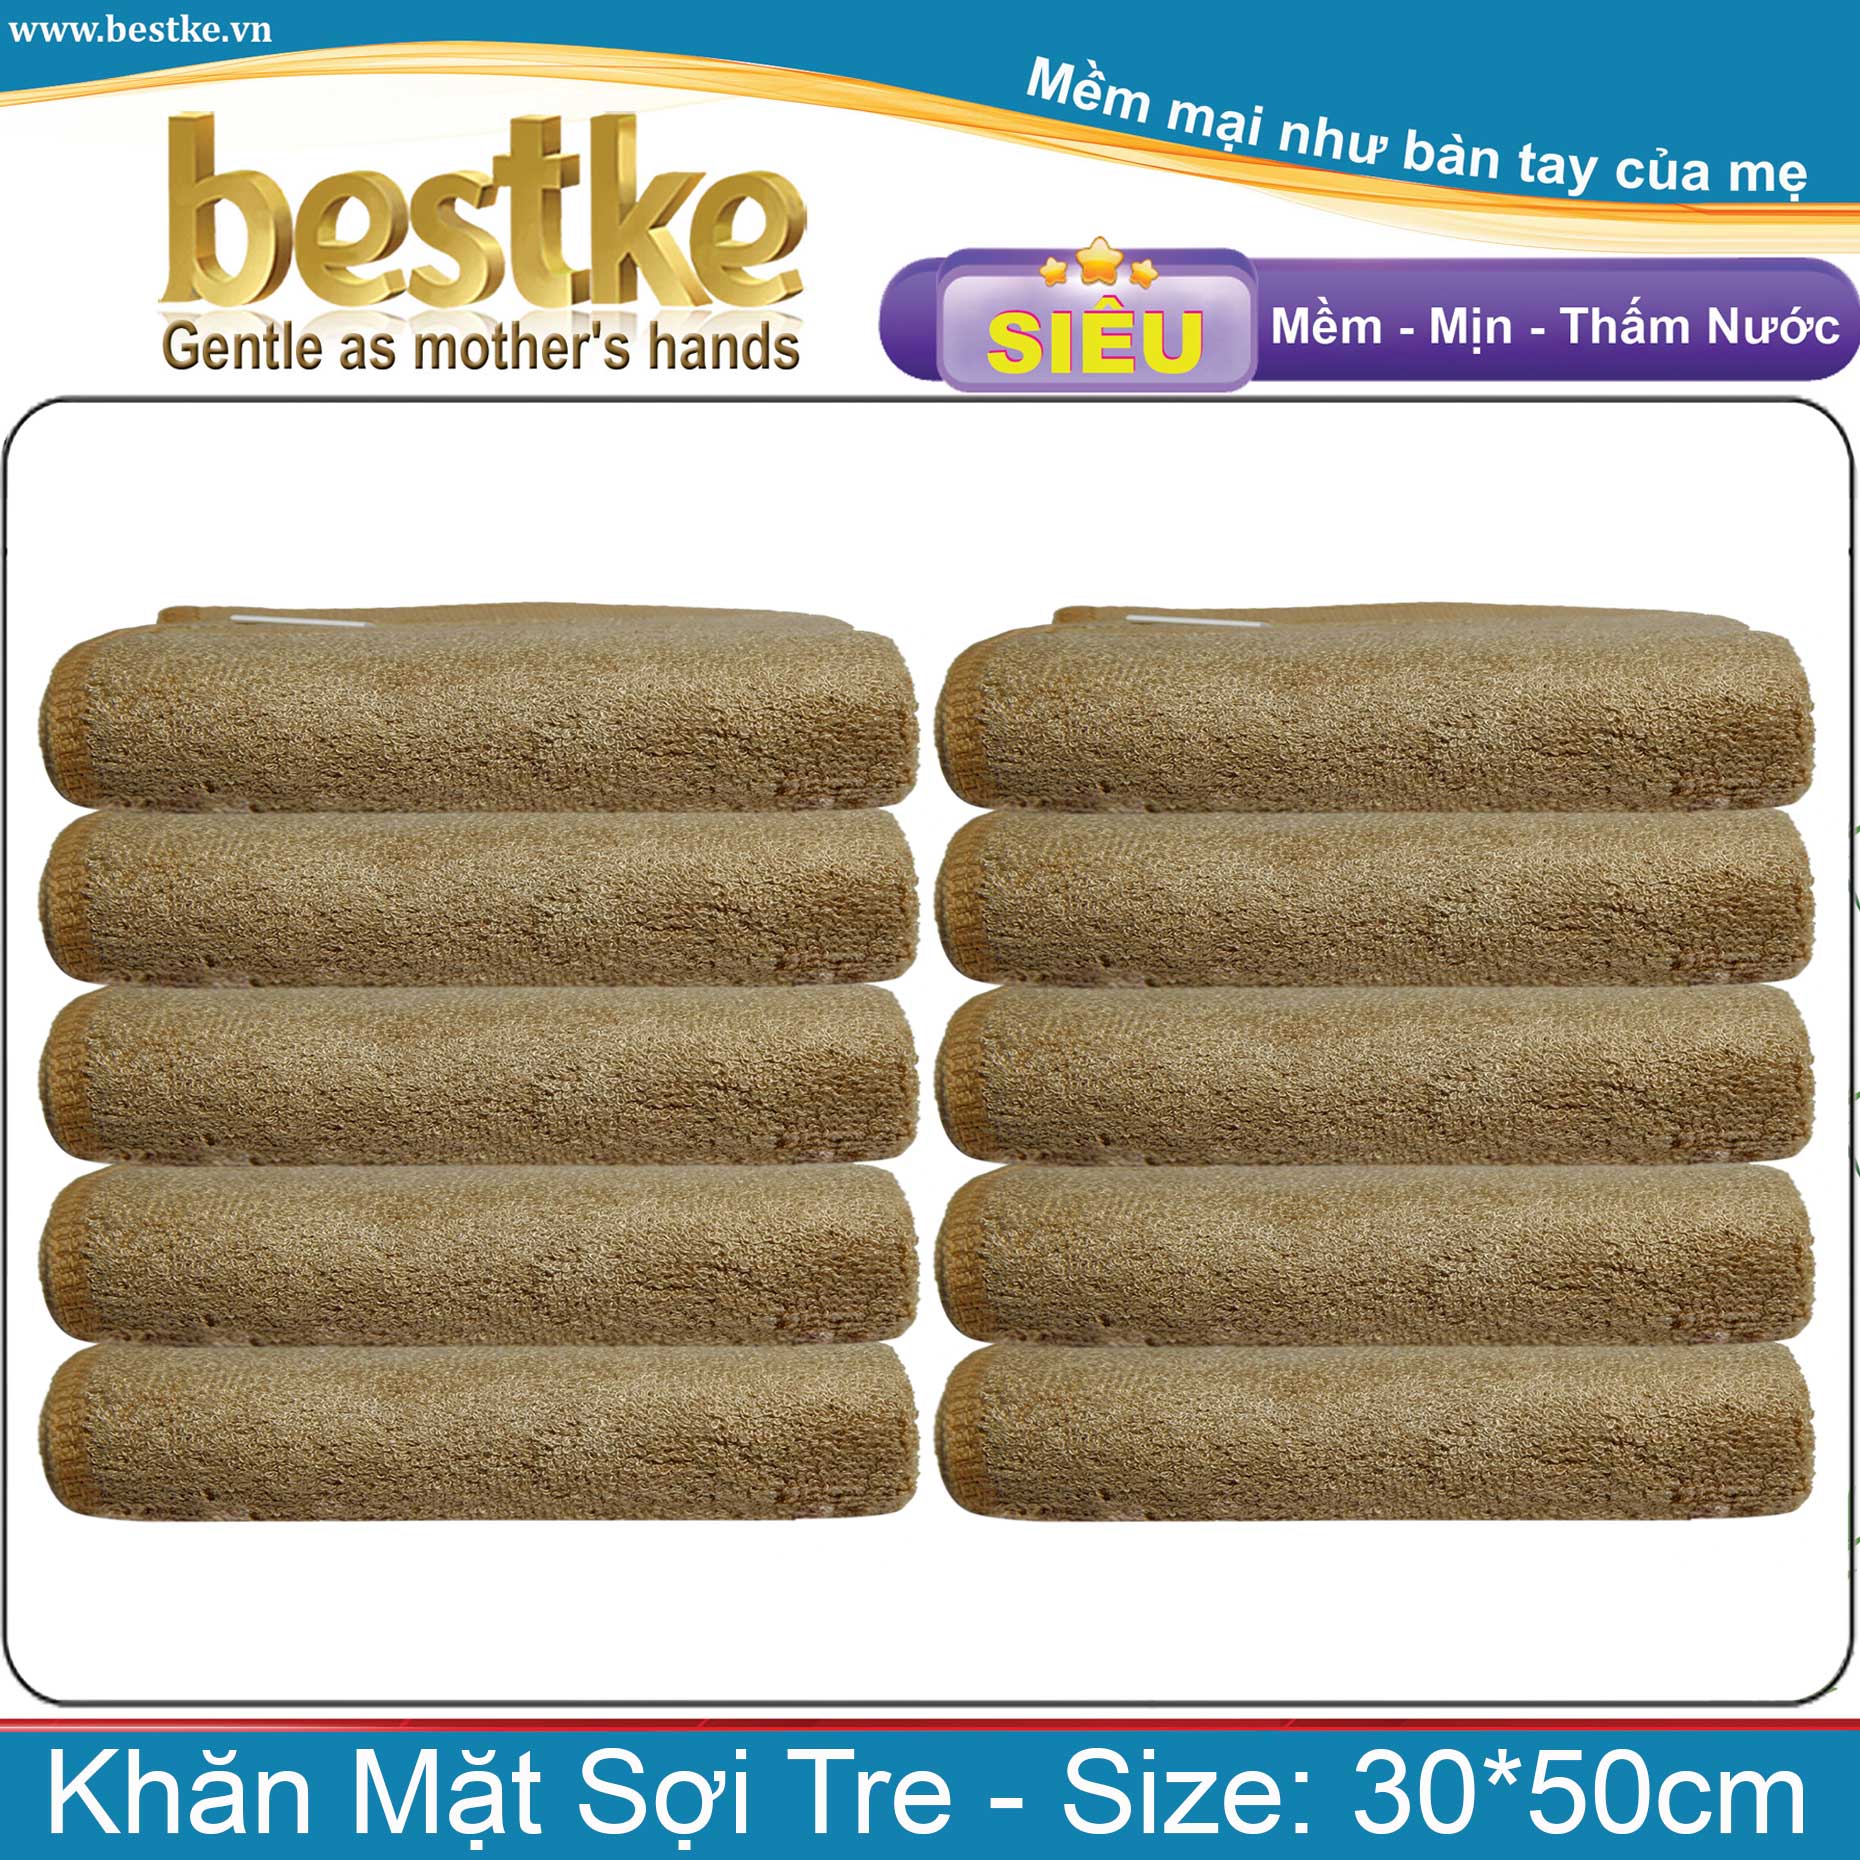 Combo 10 Khăn Mặt Sợi Tre bestke siêu mềm mịn thấm hút và không phai màu, cafe brown size 30*50cm = 70g/cái, Bamboo Towels